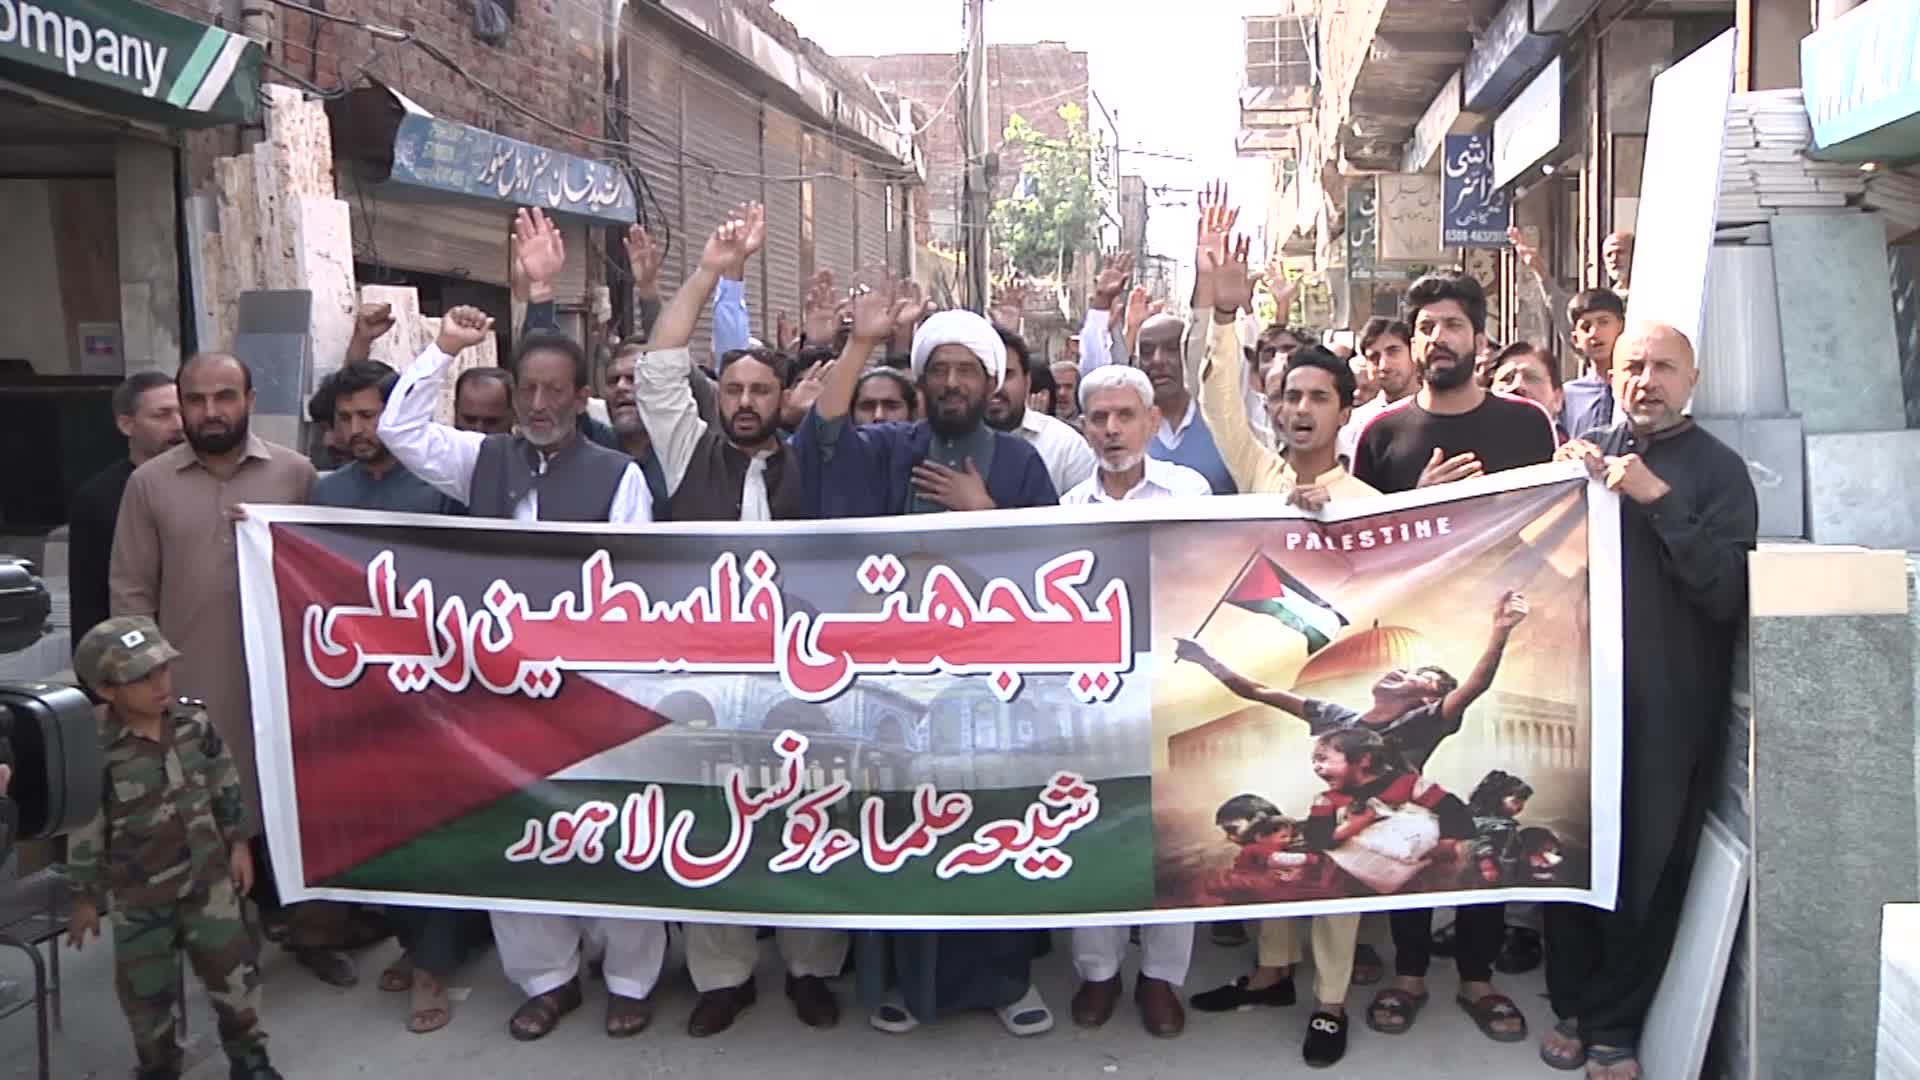 تظاهرة في لاهور دعما لفلسطين - طوفان الأقصى